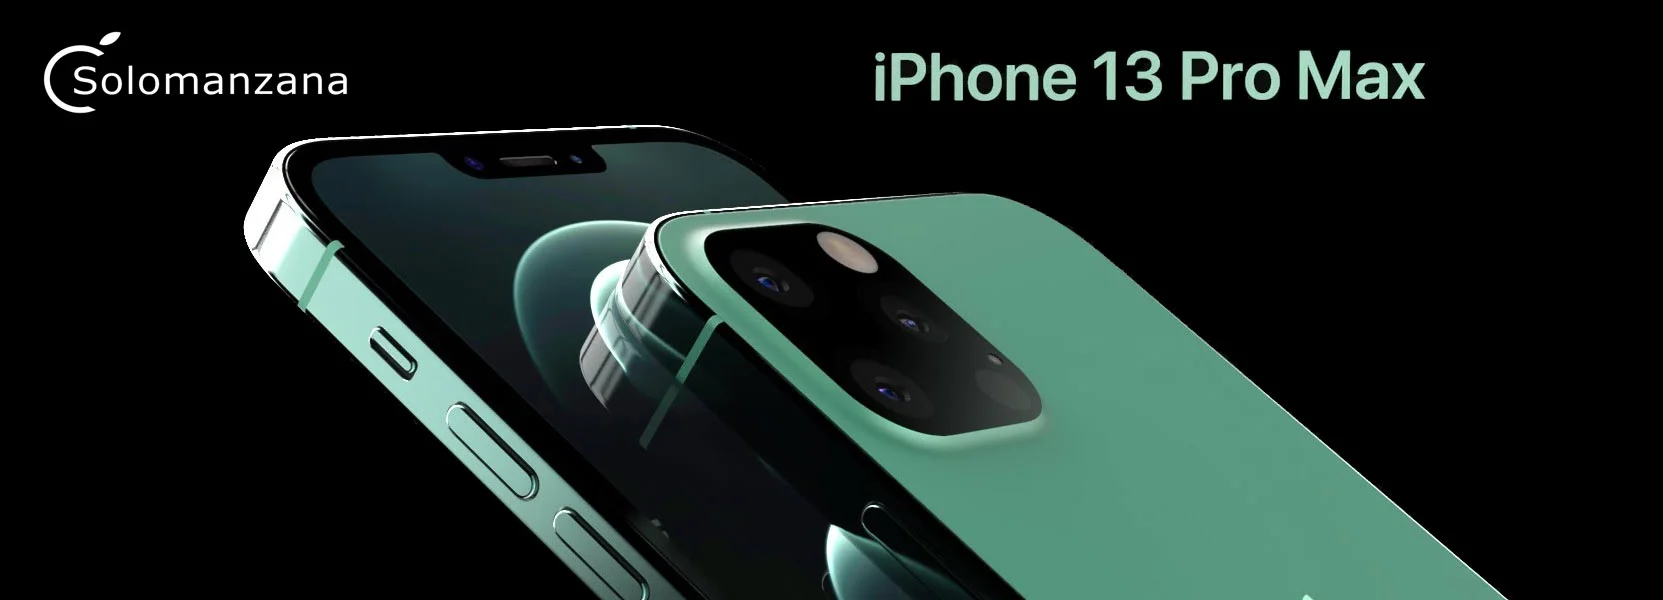 iPhone 13 Pro Max reacondicionado